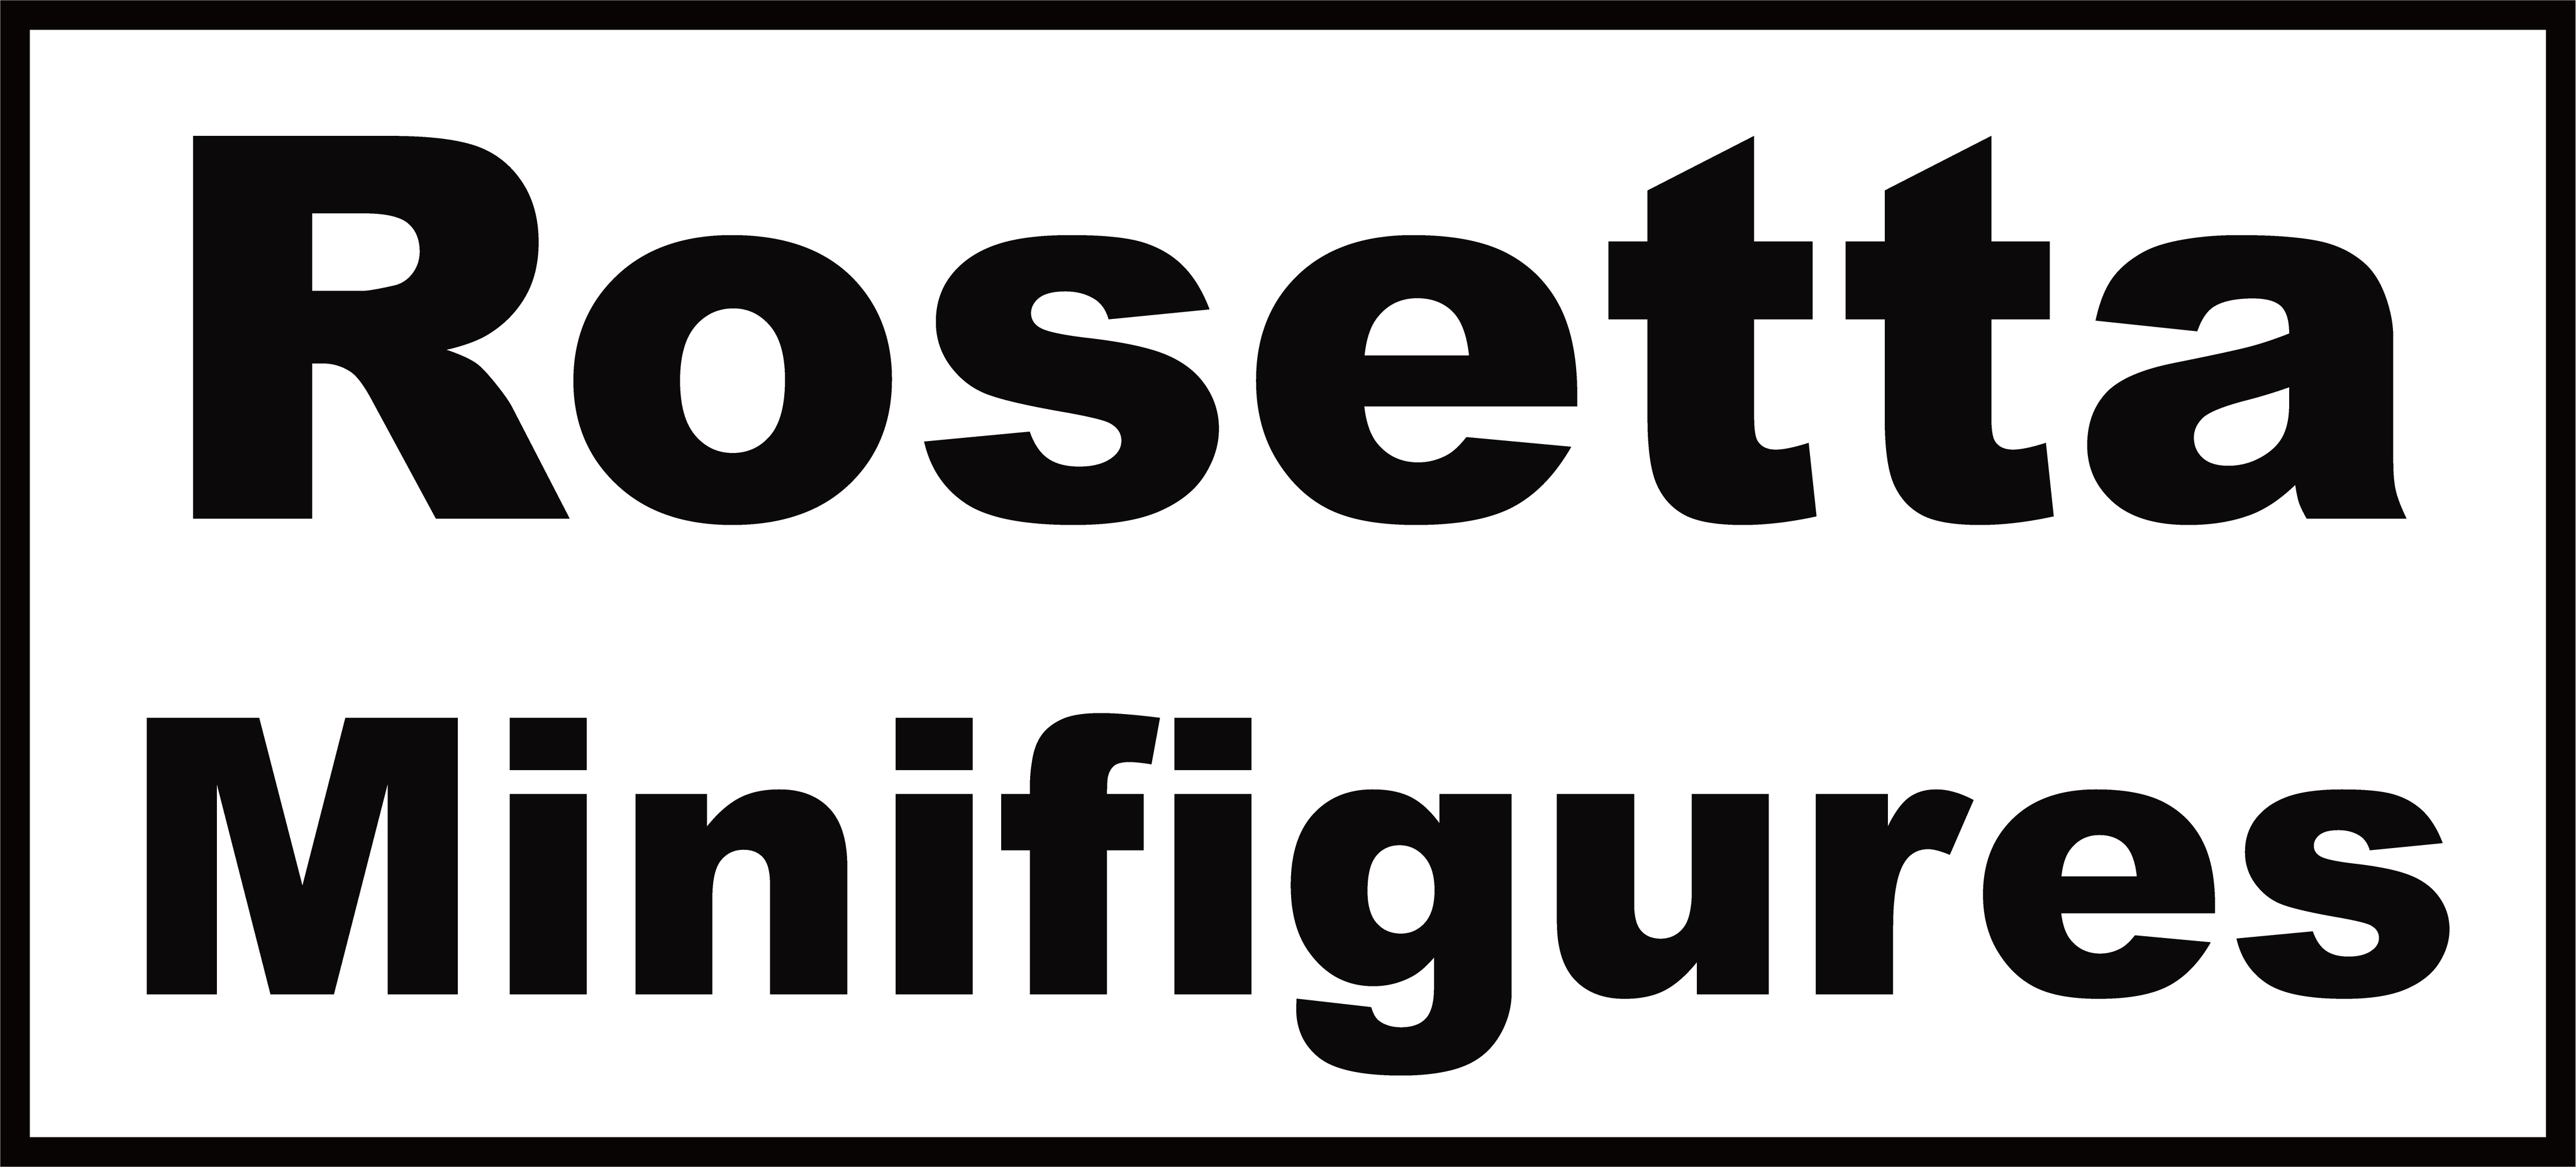 Rosetta Minifigures